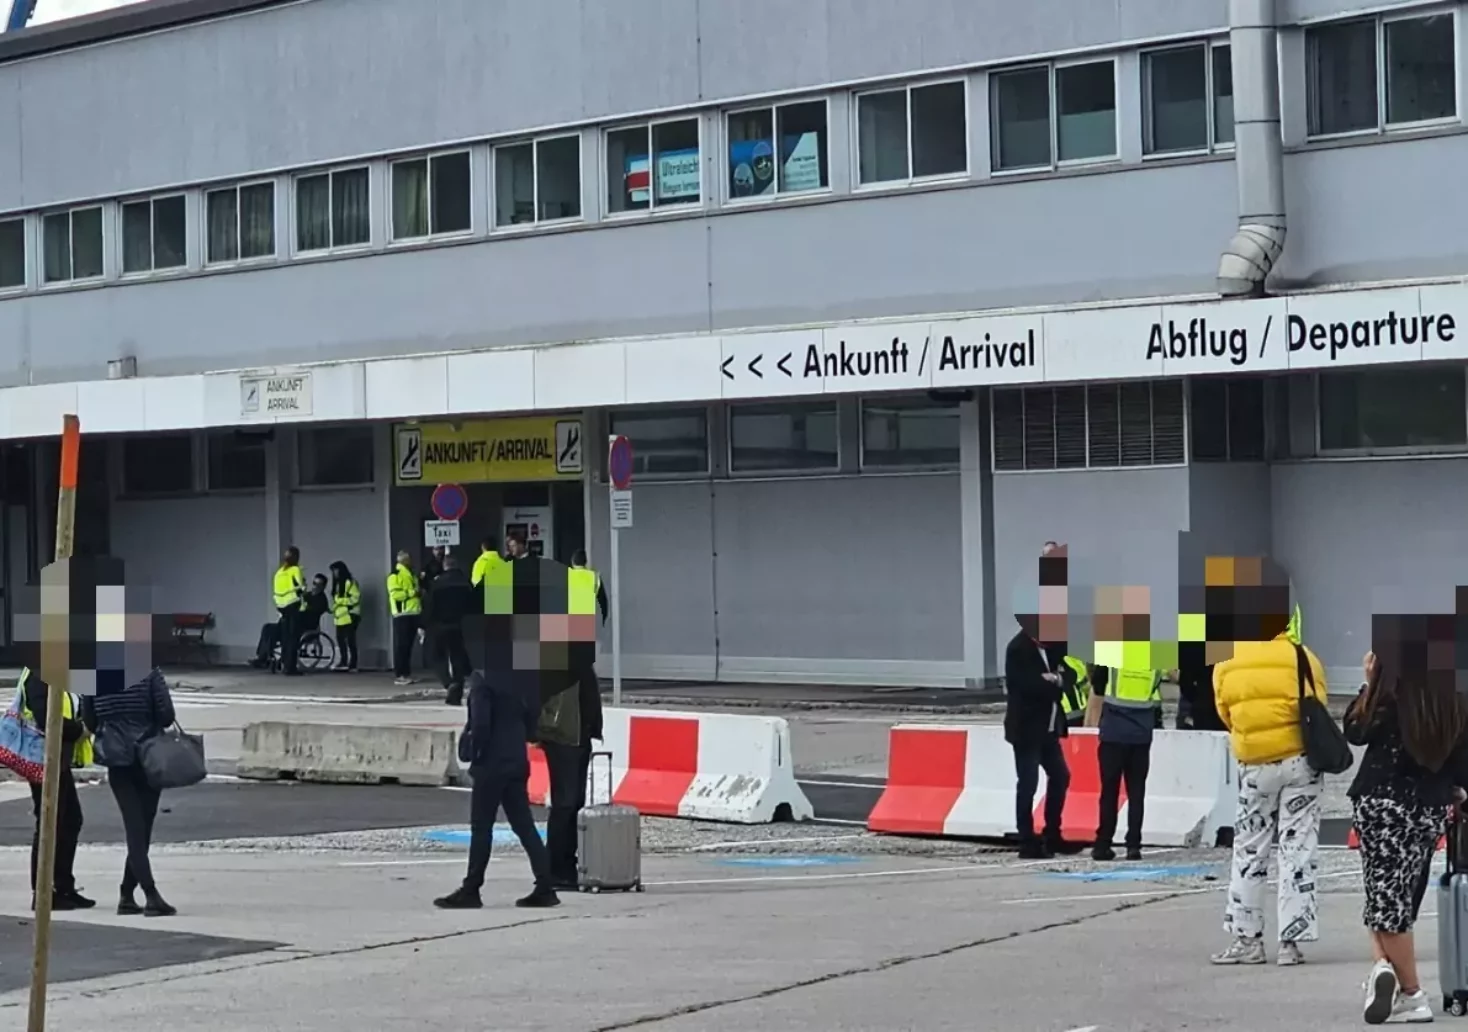 Foto in Beitrag von 5min.at: Zu sehen ist das Flughafengebäude in Klagenfurt von außen, viele Menschen stehen davor.